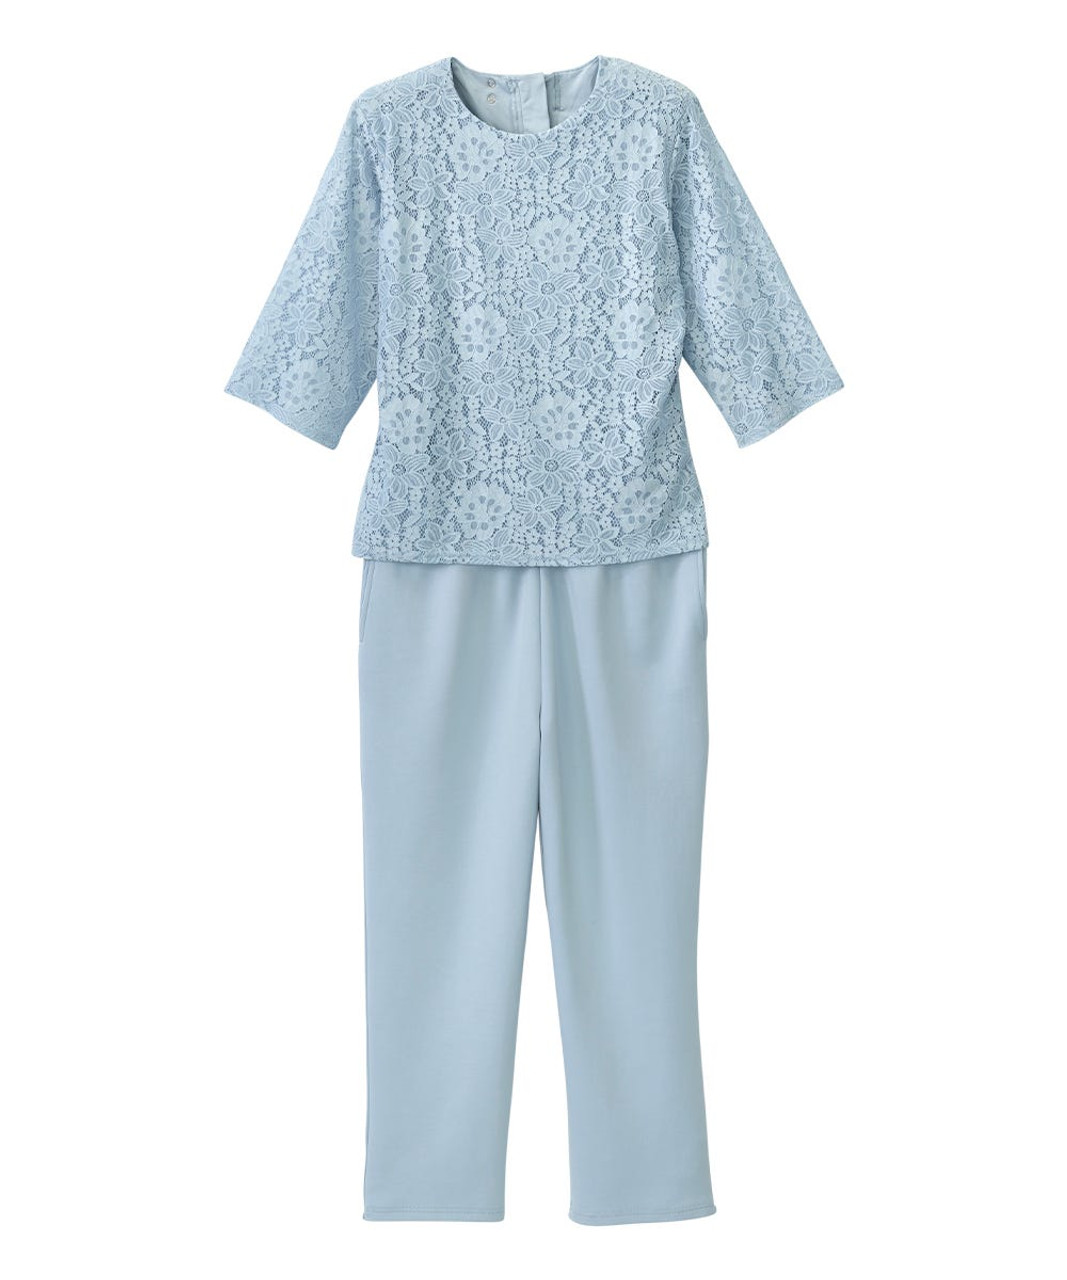 Silverts SV203 Senior Women's Adaptive Lace Anti-Strip Suit Breezy Blue, Size=L, SV203-SV2003-L